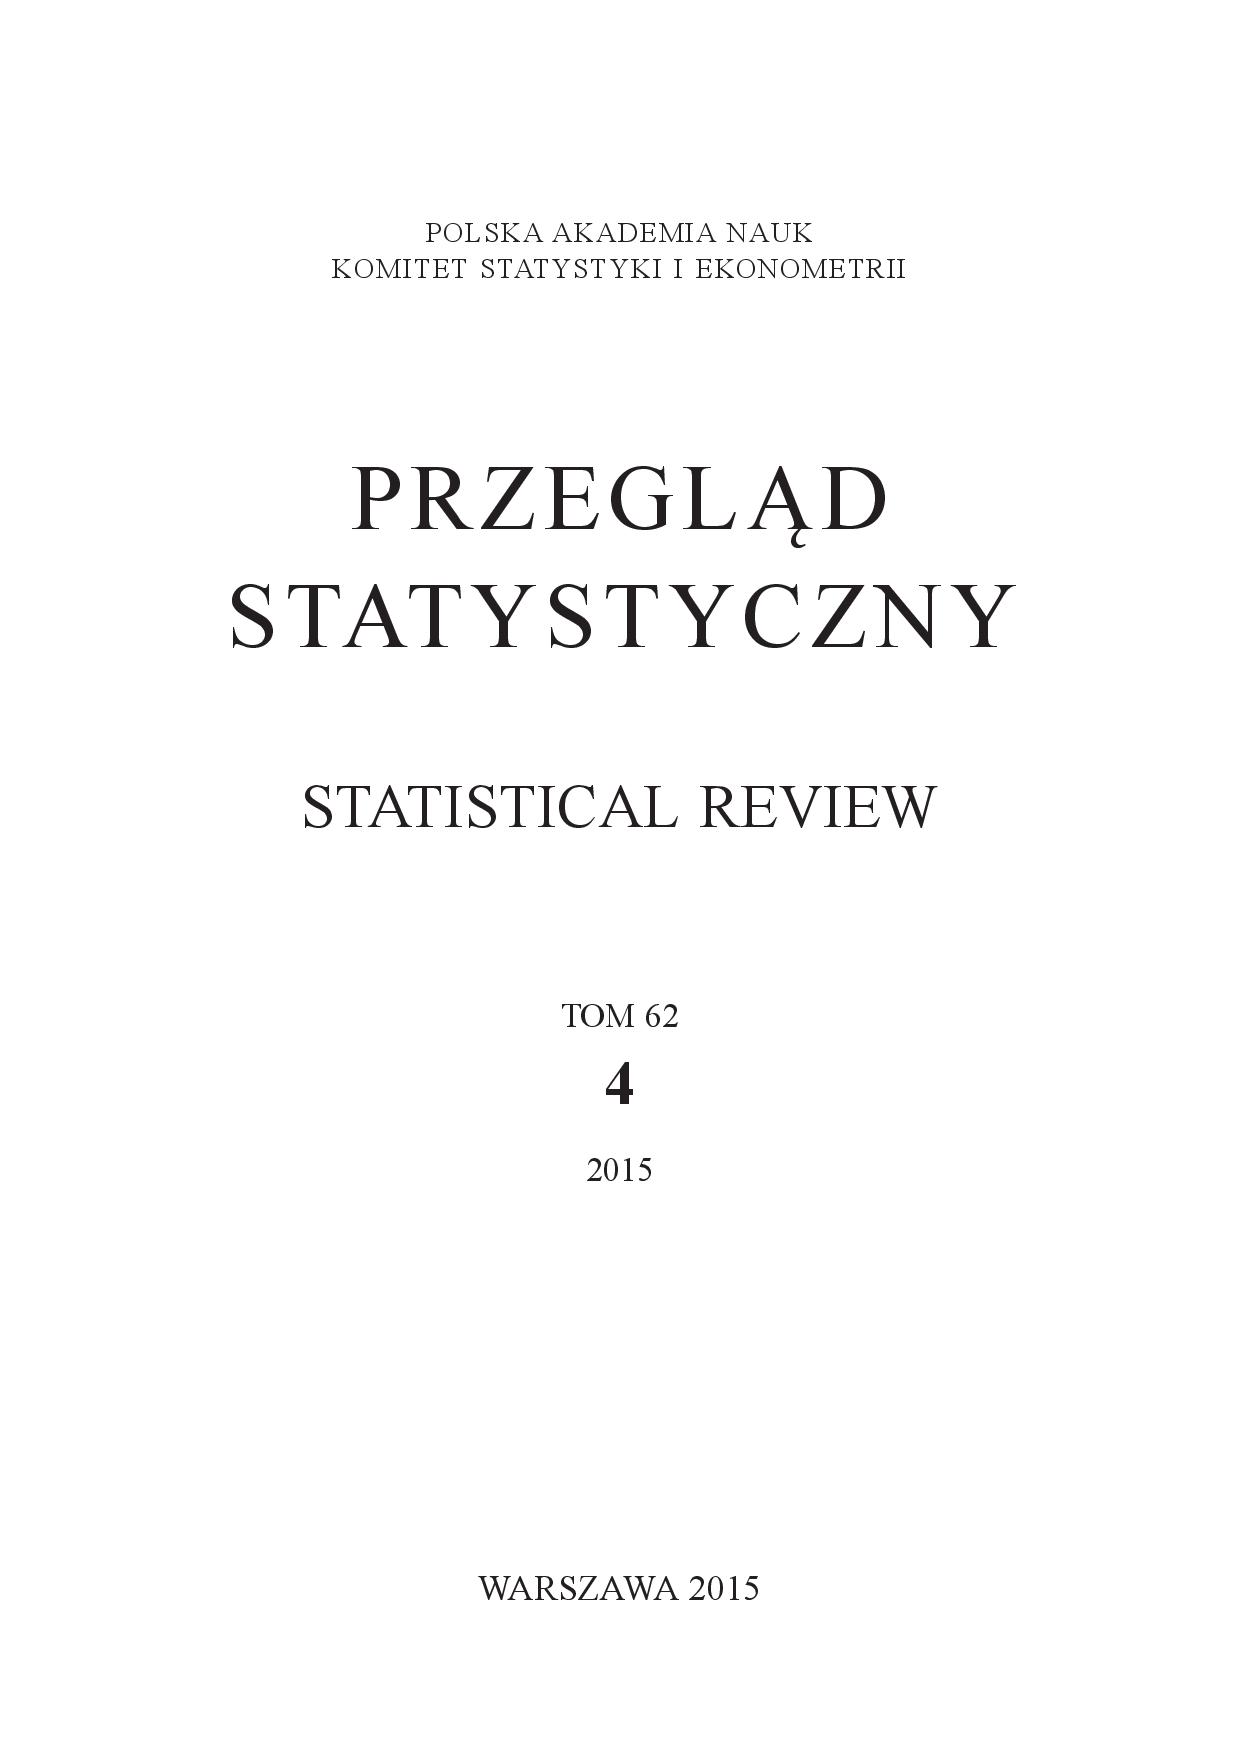 Rola polskich statystyków w Międzynarodowym Instytucie Statystycznym